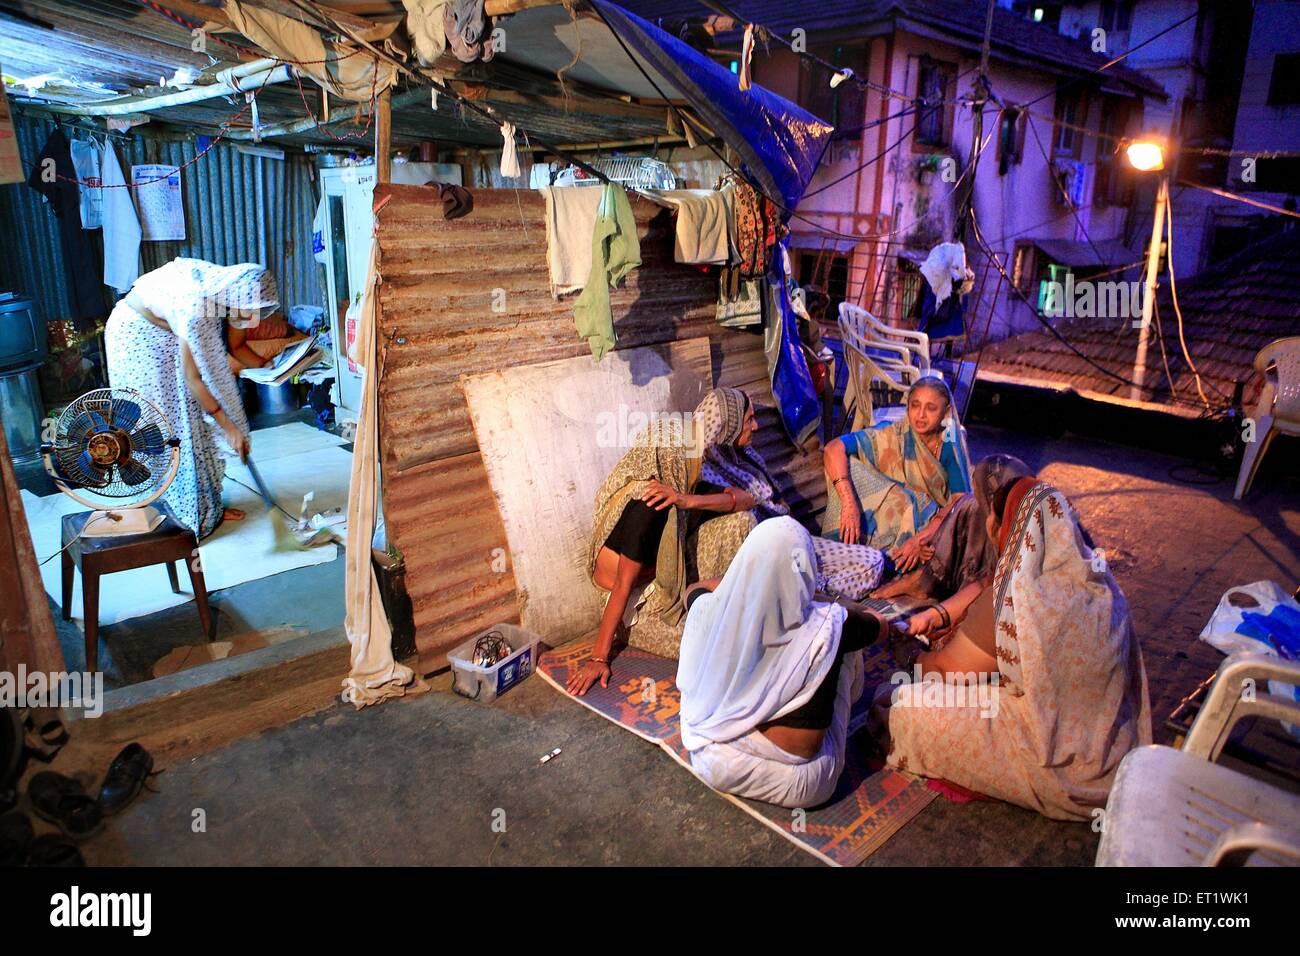 Los dolientes y familiares se reúnen casa de Harish Gohil muertos en ataque Nariman House con bombas el 26 de noviembre de 2008 Mumbai Foto de stock